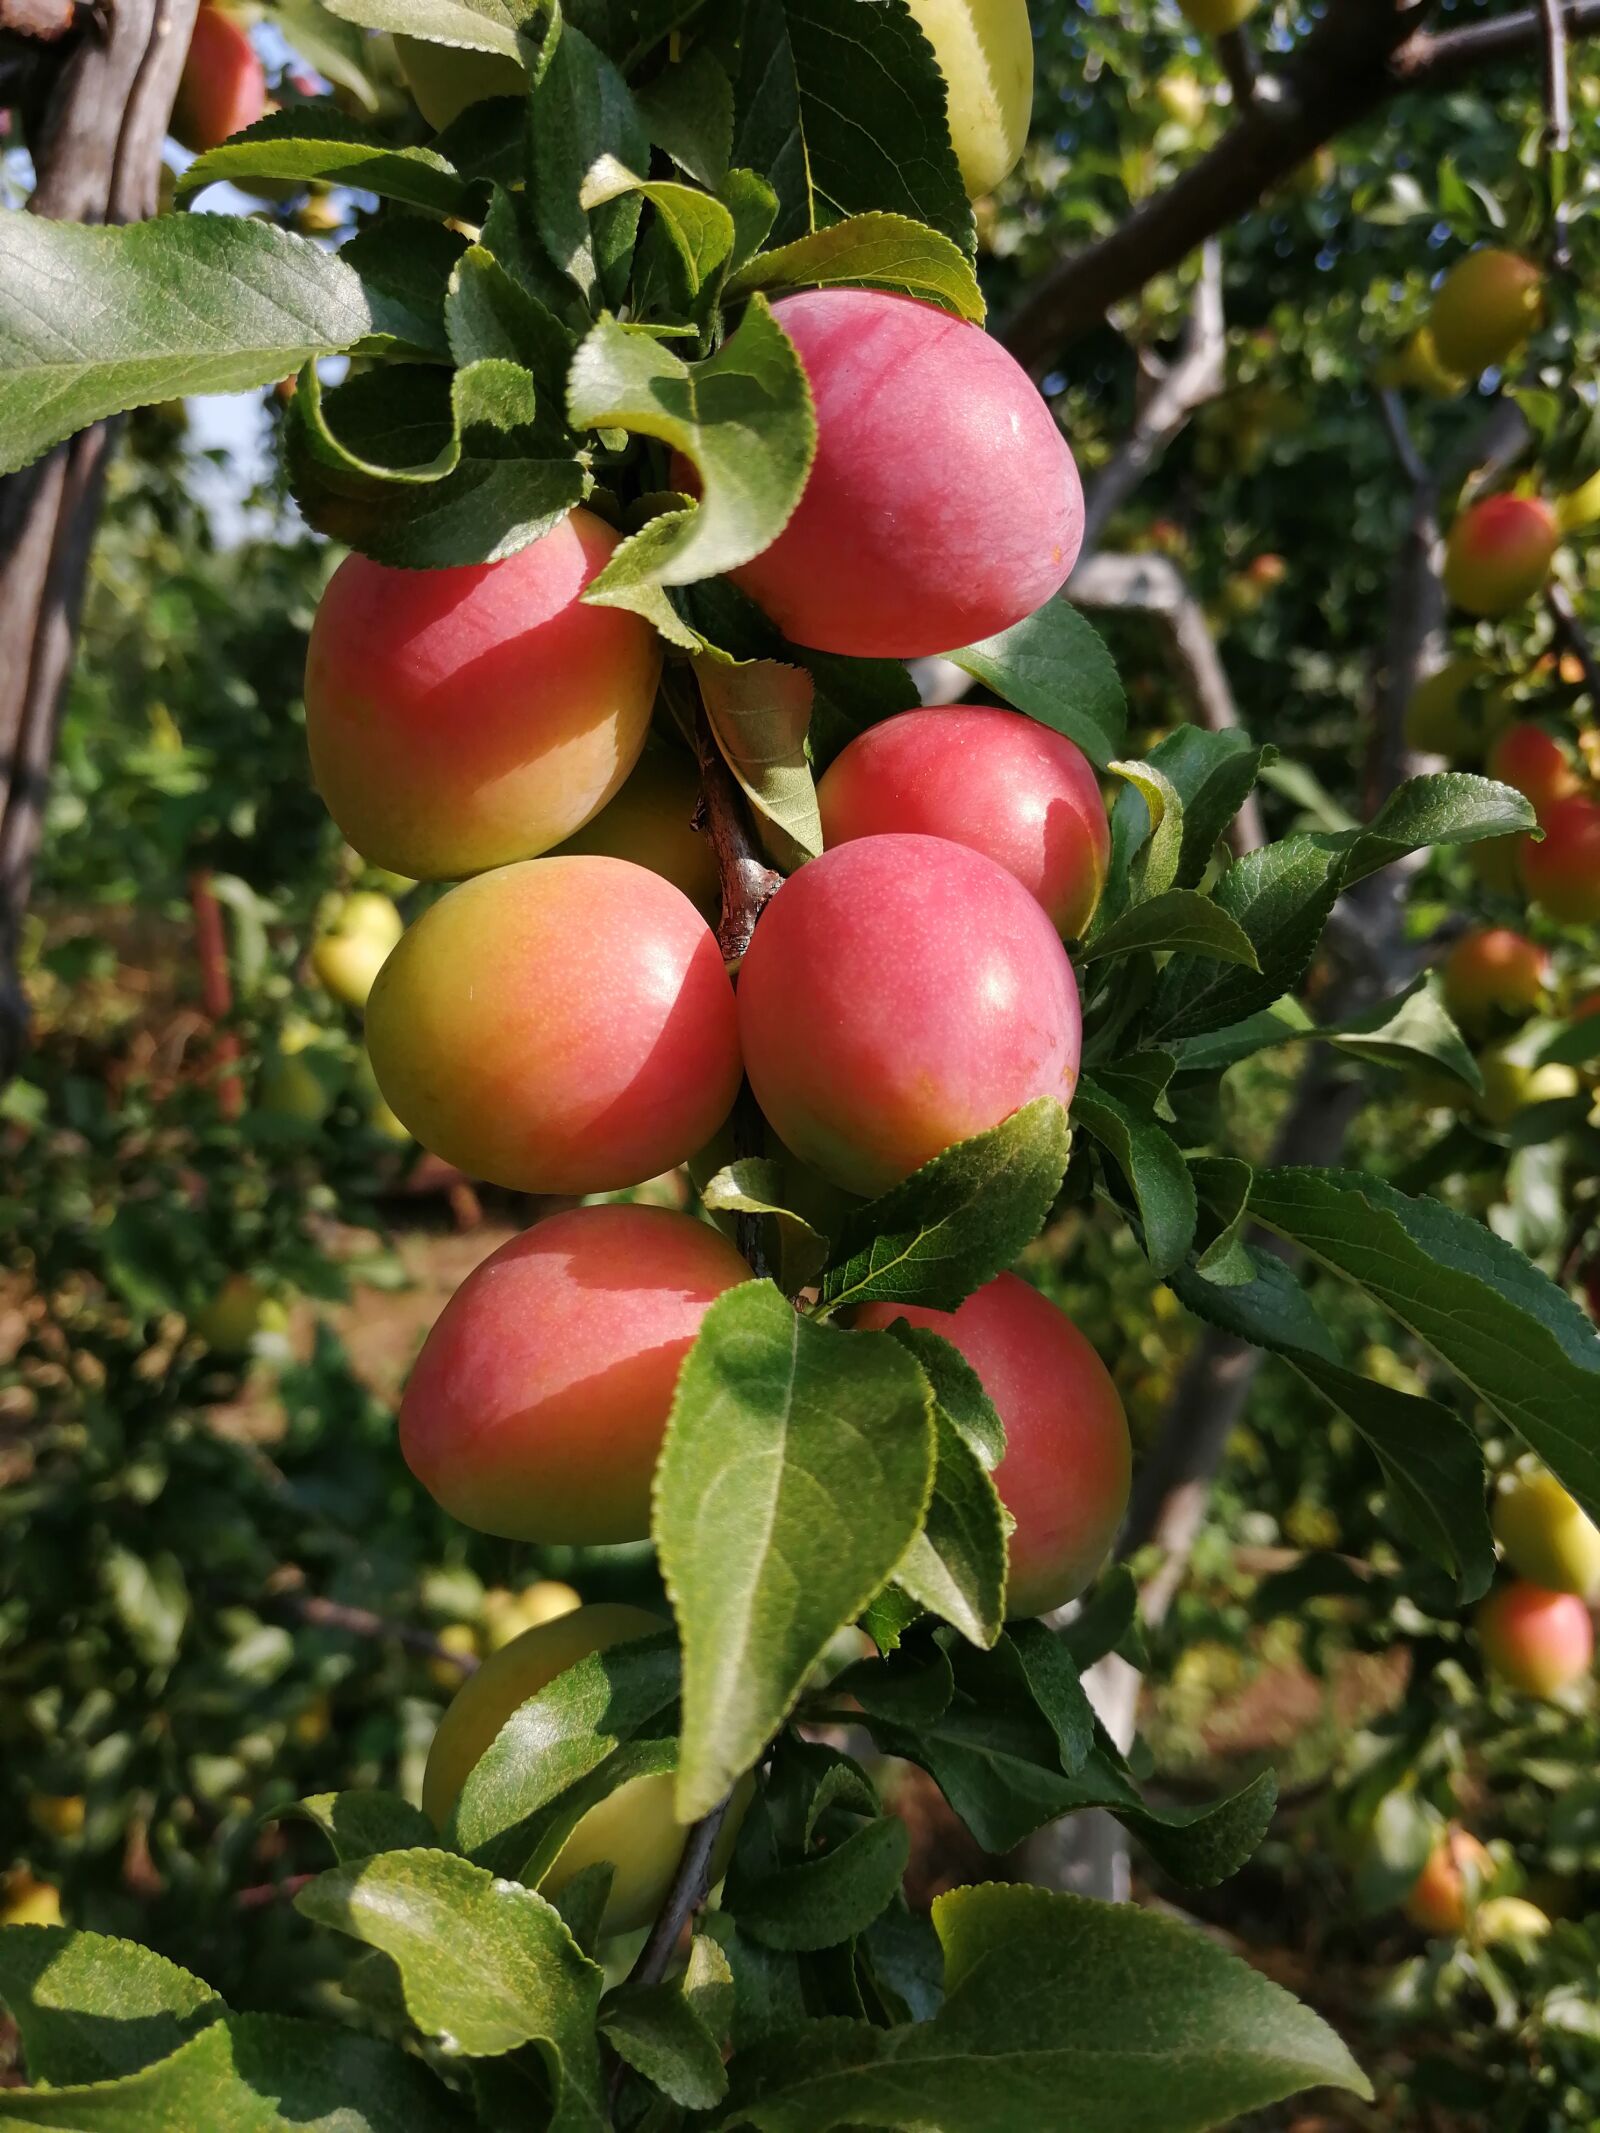 HUAWEI JSN-L21 sample photo. Cherry plum, garden, fruit photography